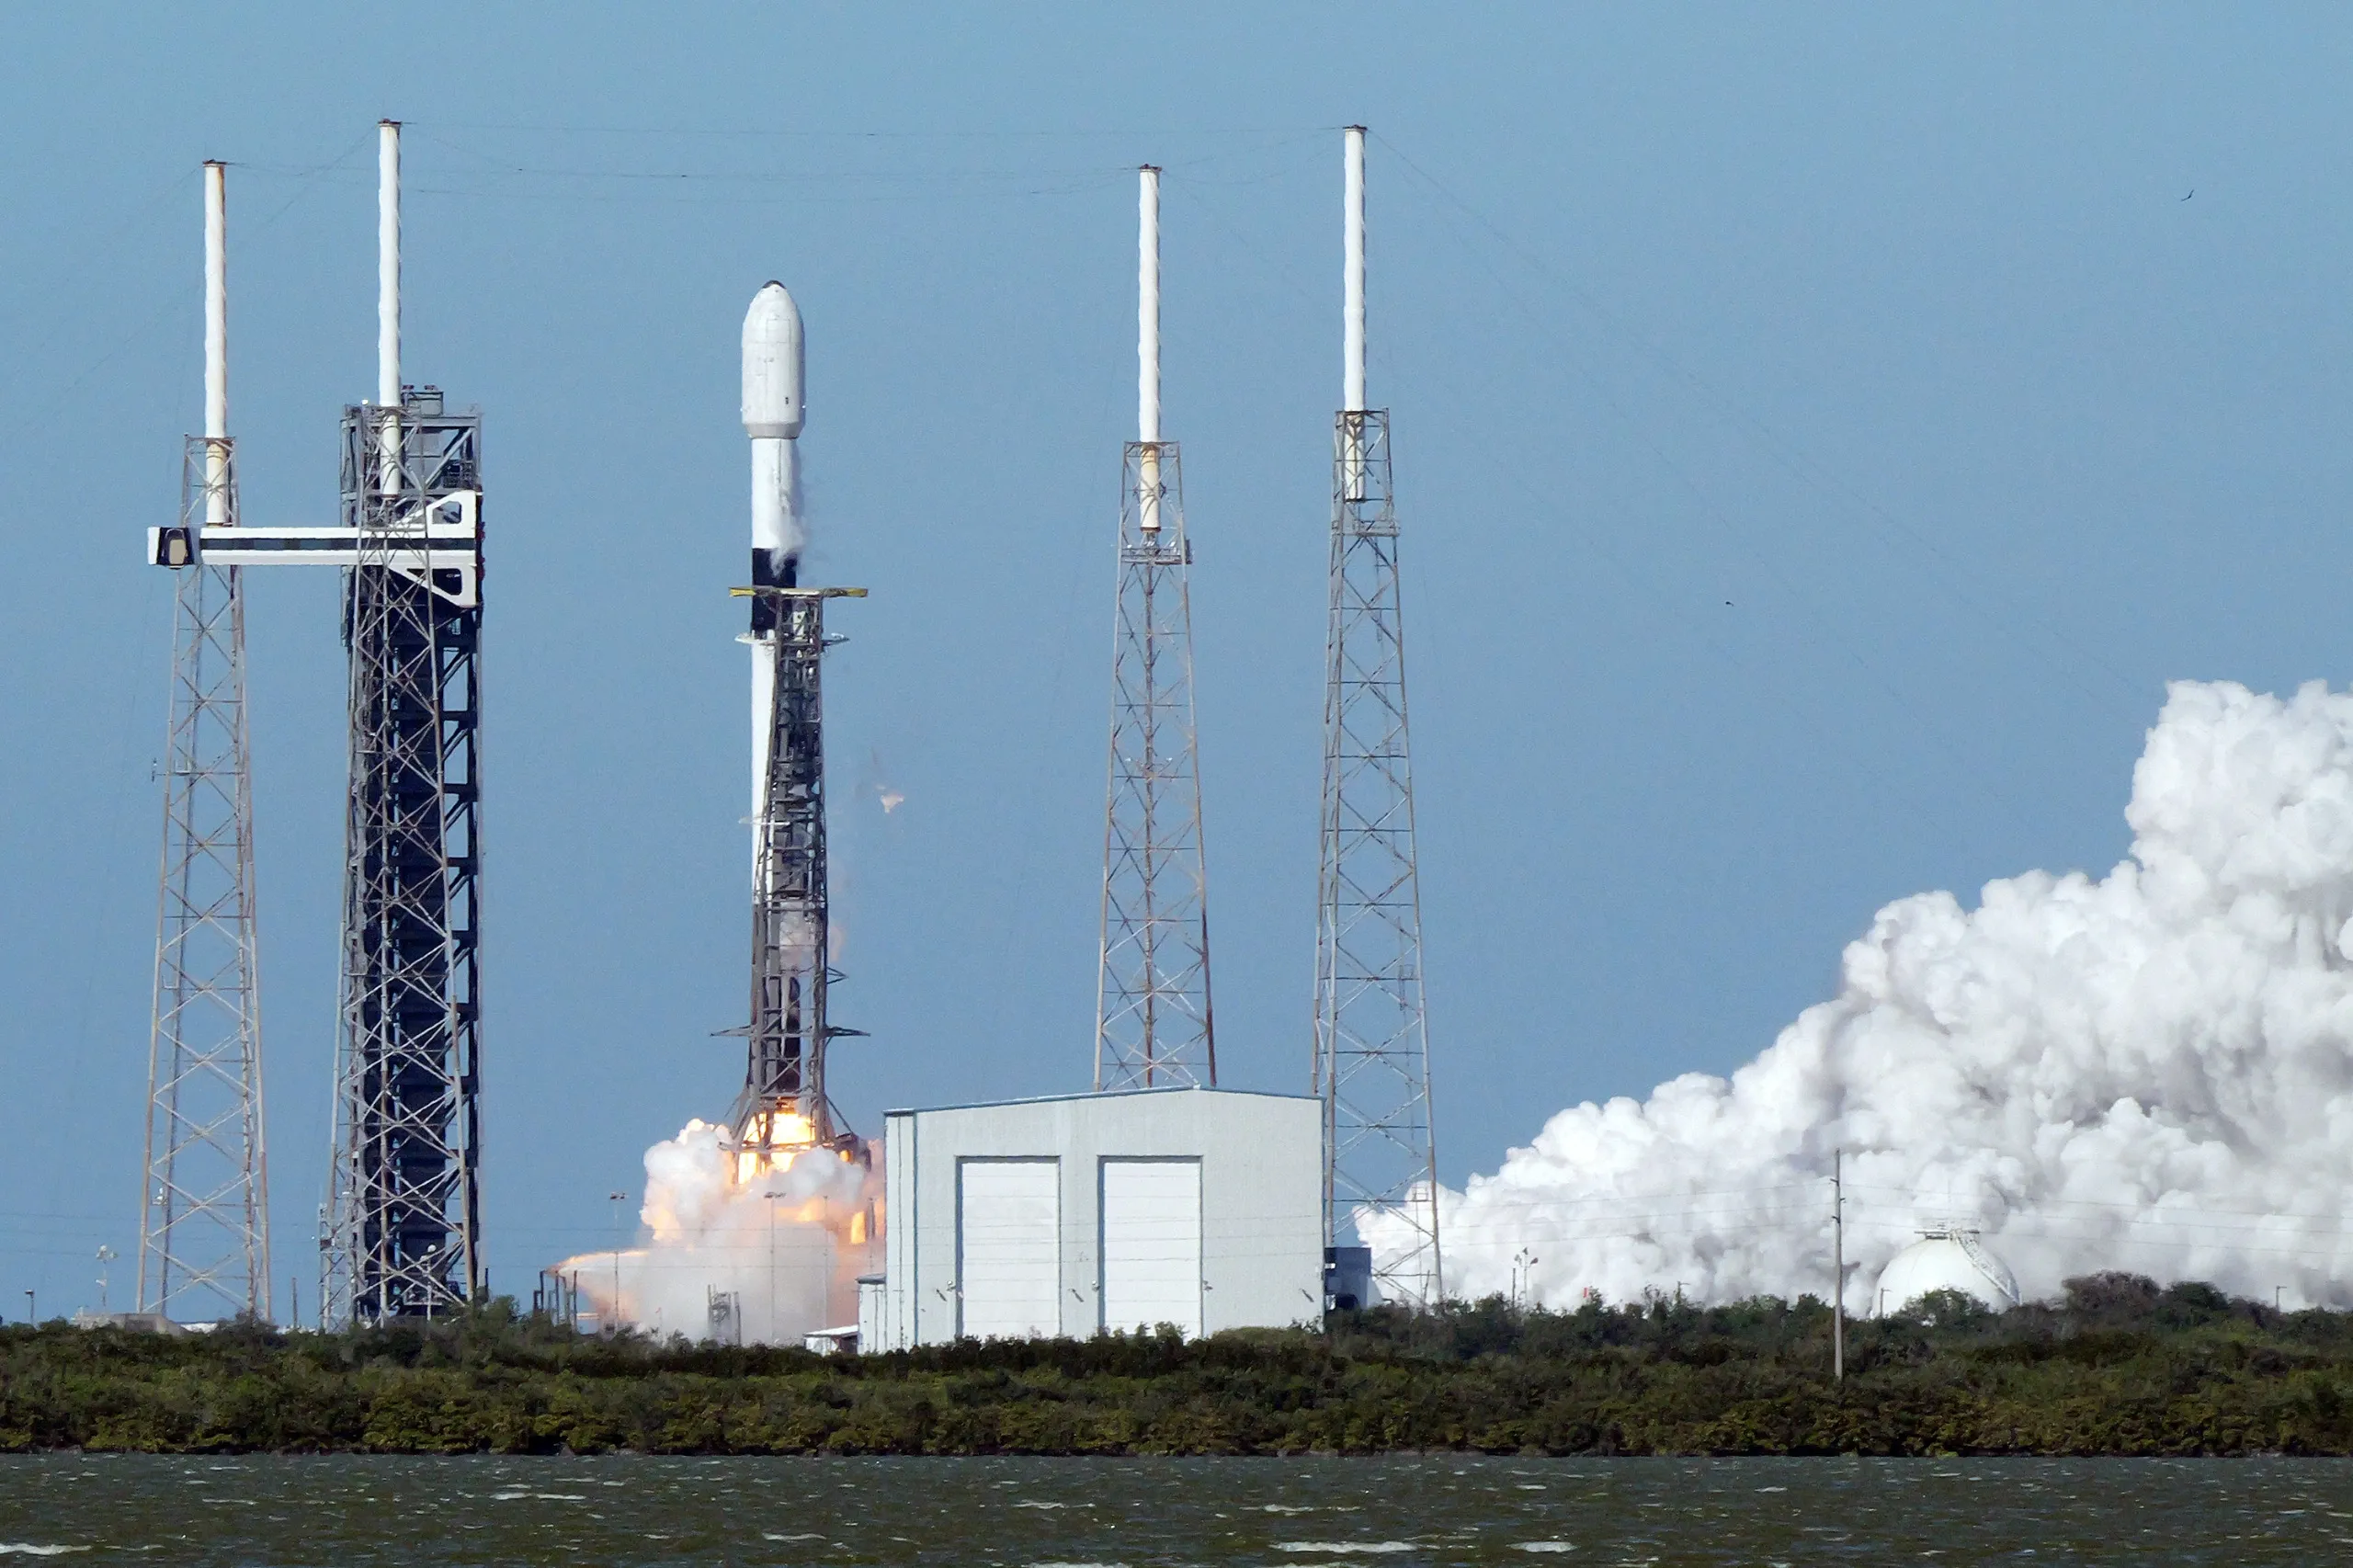 Merah Putih 2 Satellite Successfully Launched